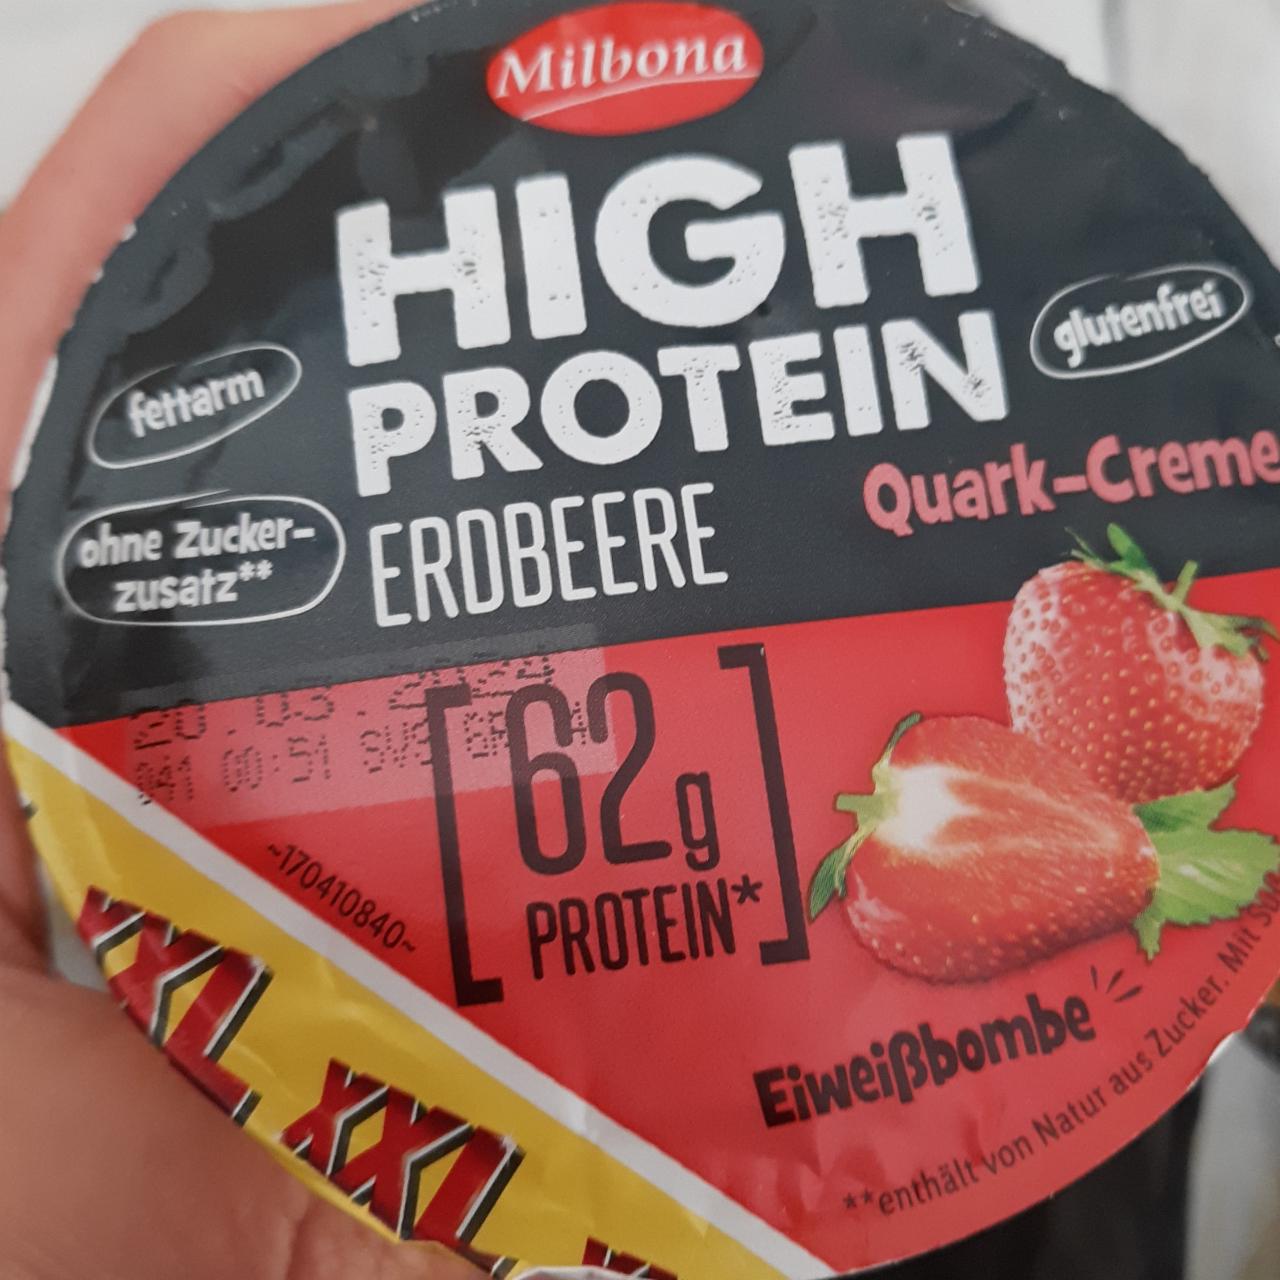 Фото - High Protein Erdbeere Quark-Creme Milbona